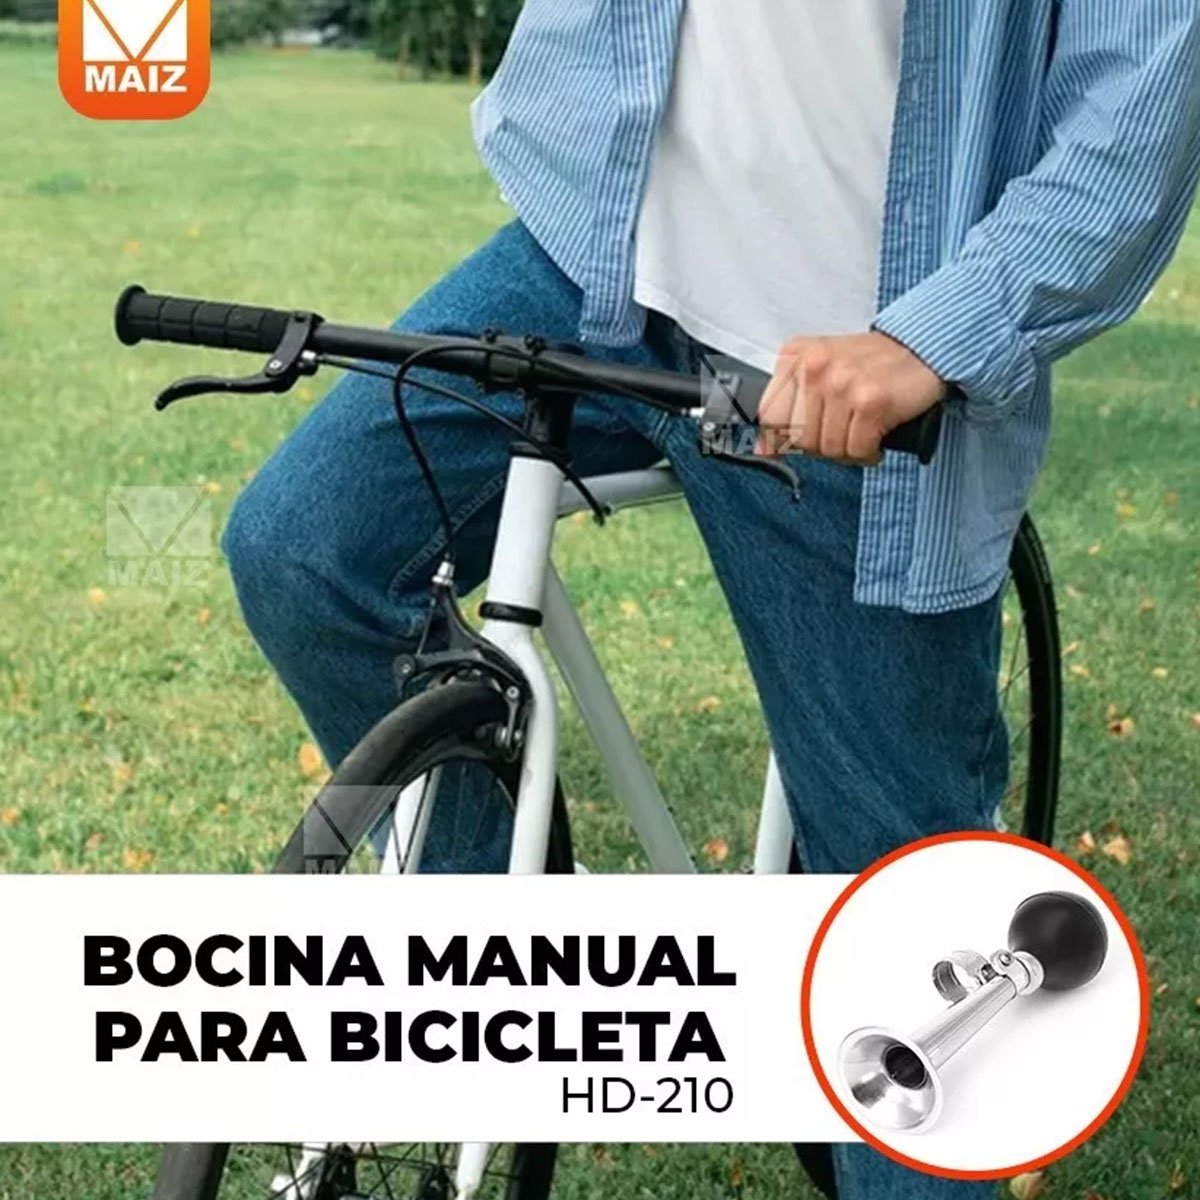 ▷ BOCINA BICICLETA  Bocina de aire para bicicleta